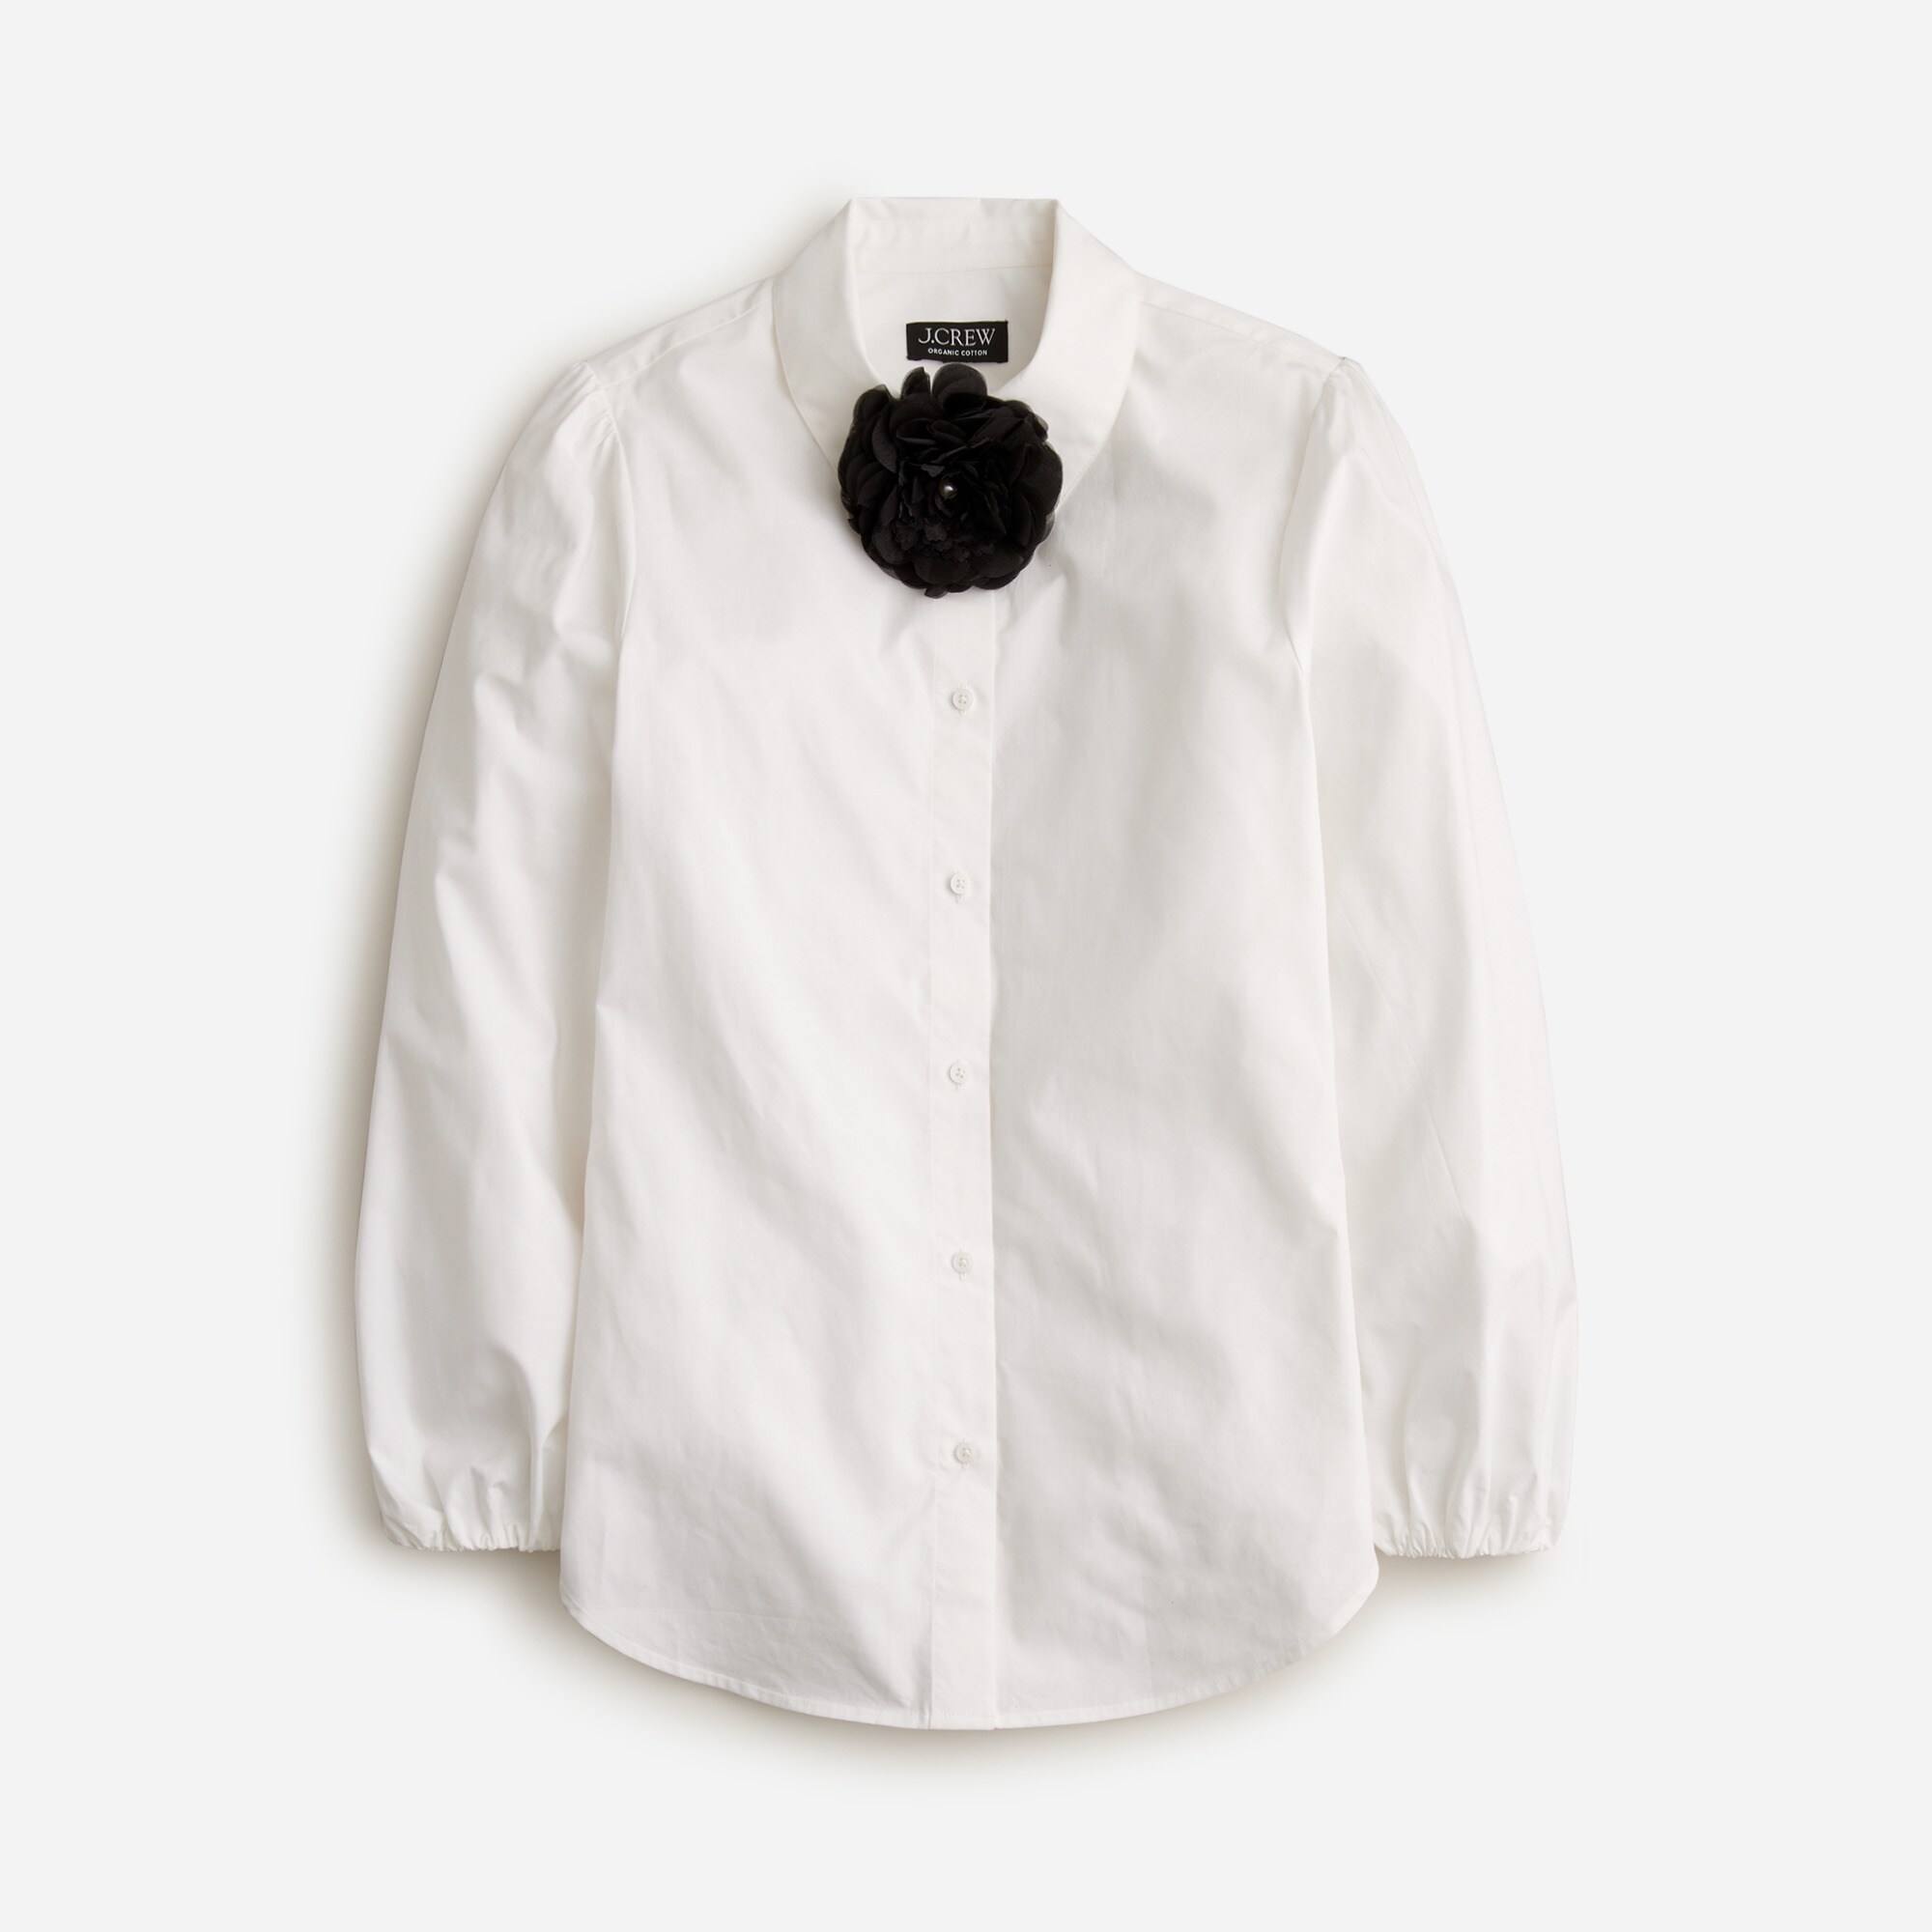  Rosette button-up shirt in cotton poplin